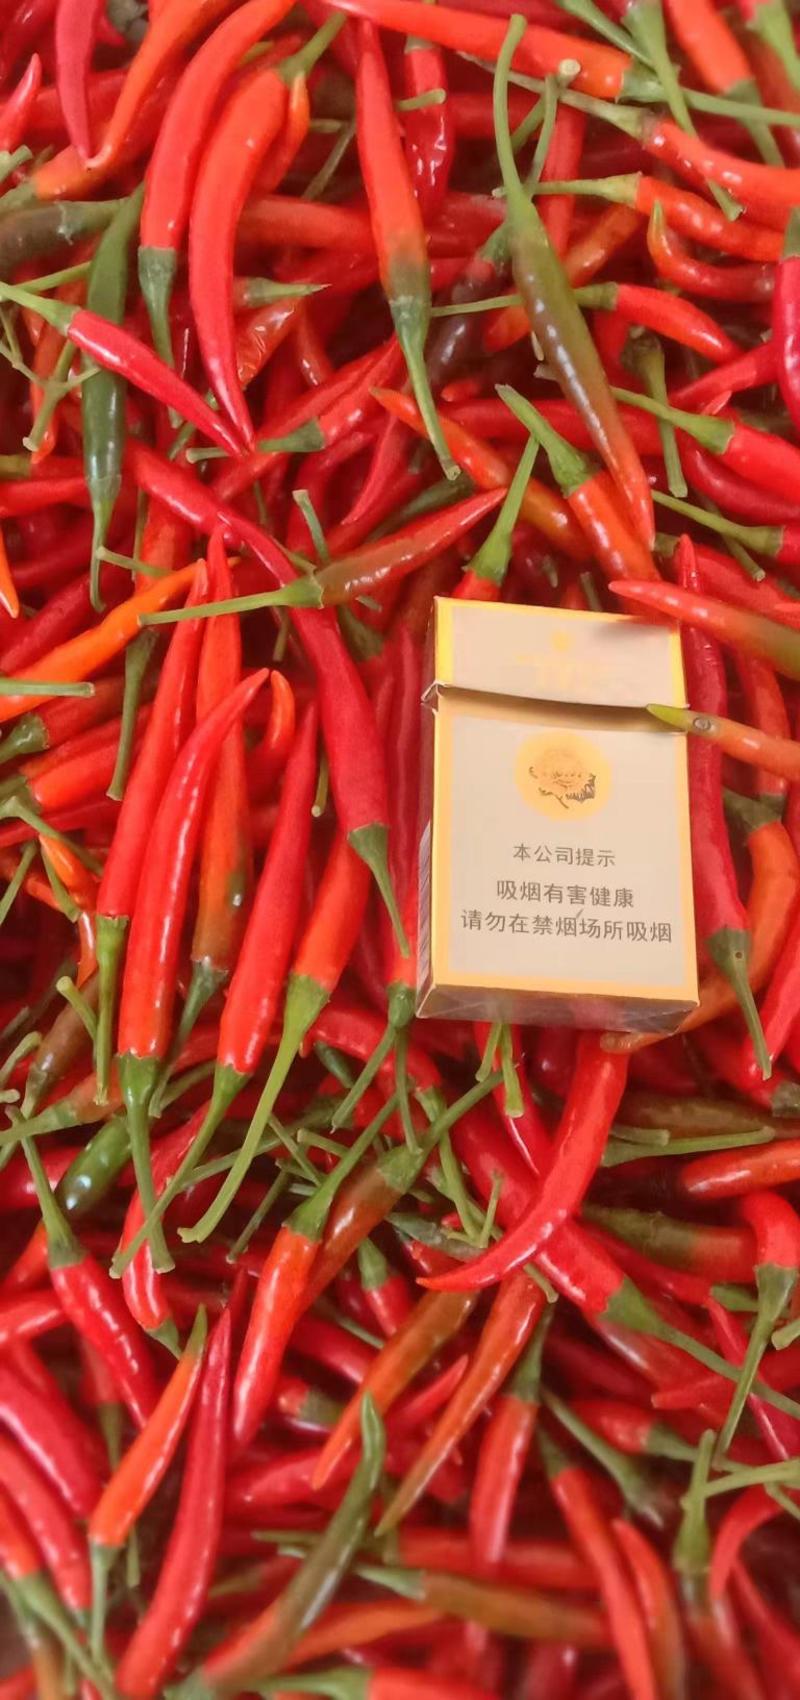 【小米椒】精品小米椒大量上市常年供应欢迎采购